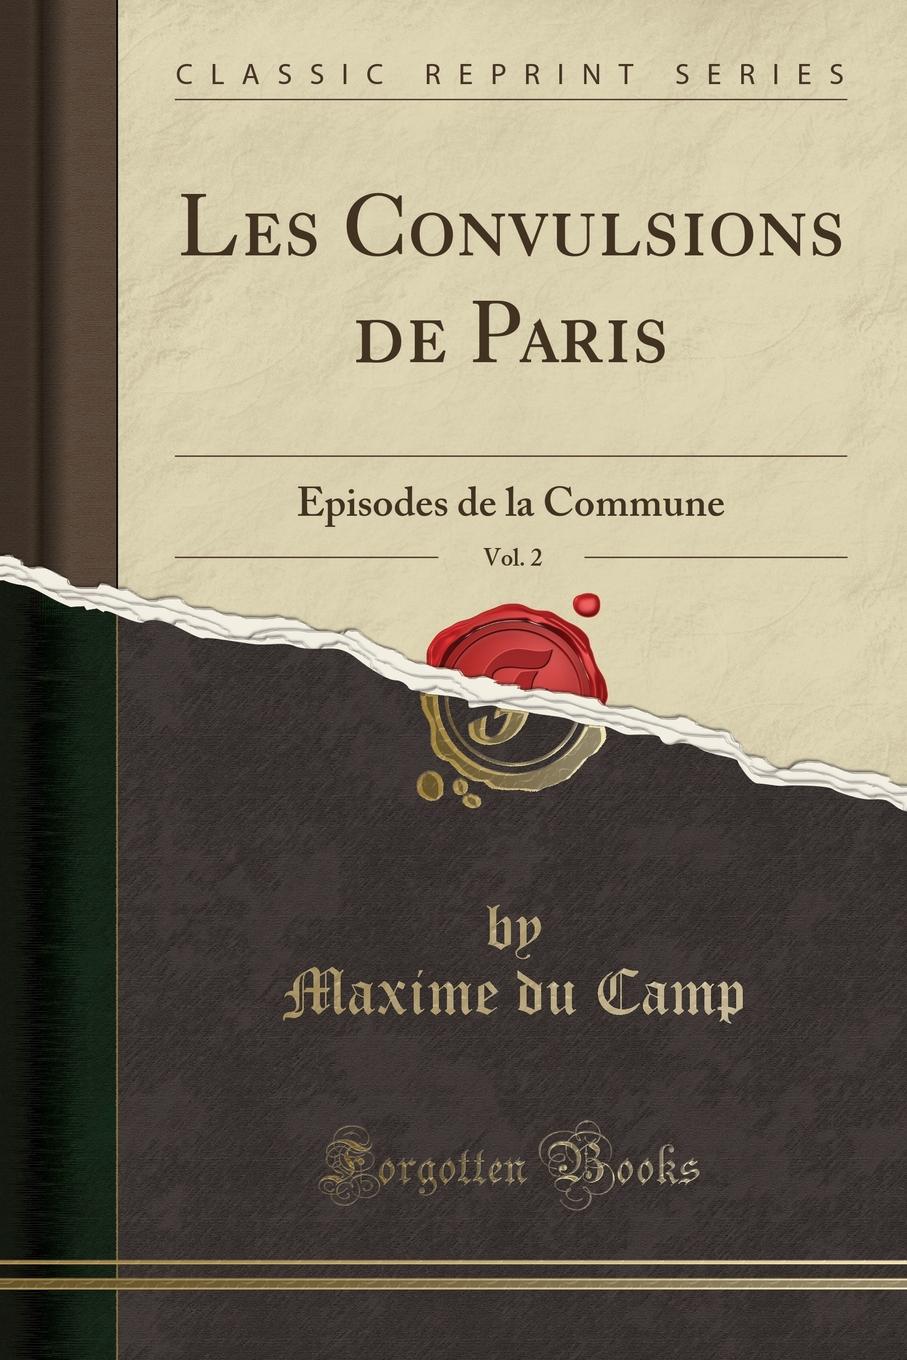 Les Convulsions de Paris, Vol. 2. Episodes de la Commune (Classic Reprint)